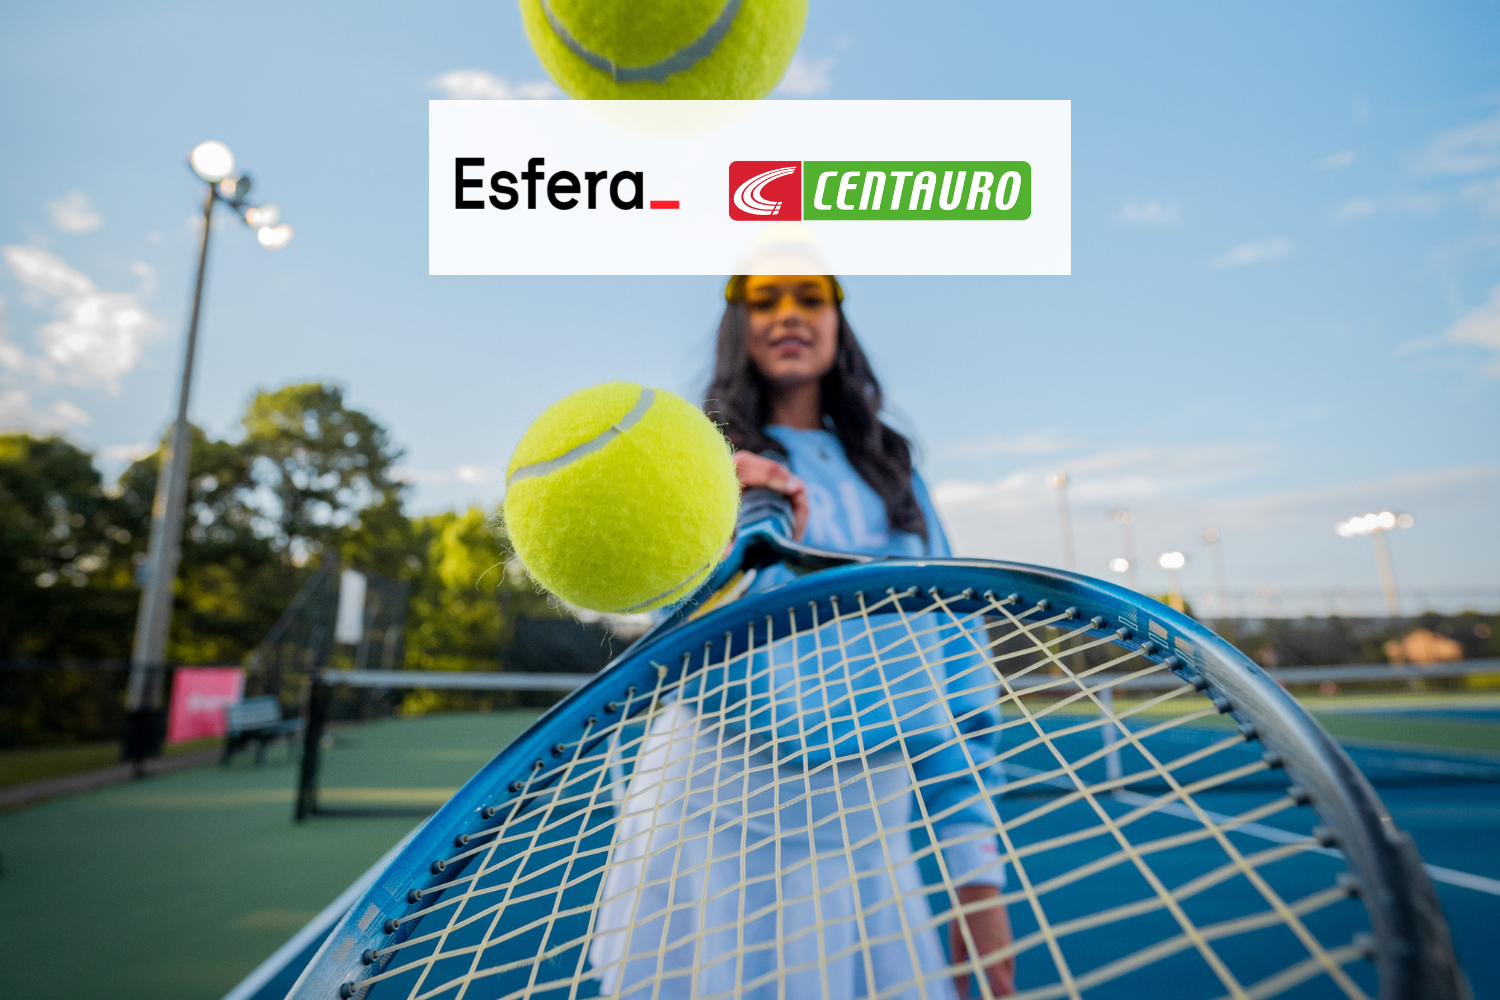 mulher com raquete de tênis com logo esfera e Centauro